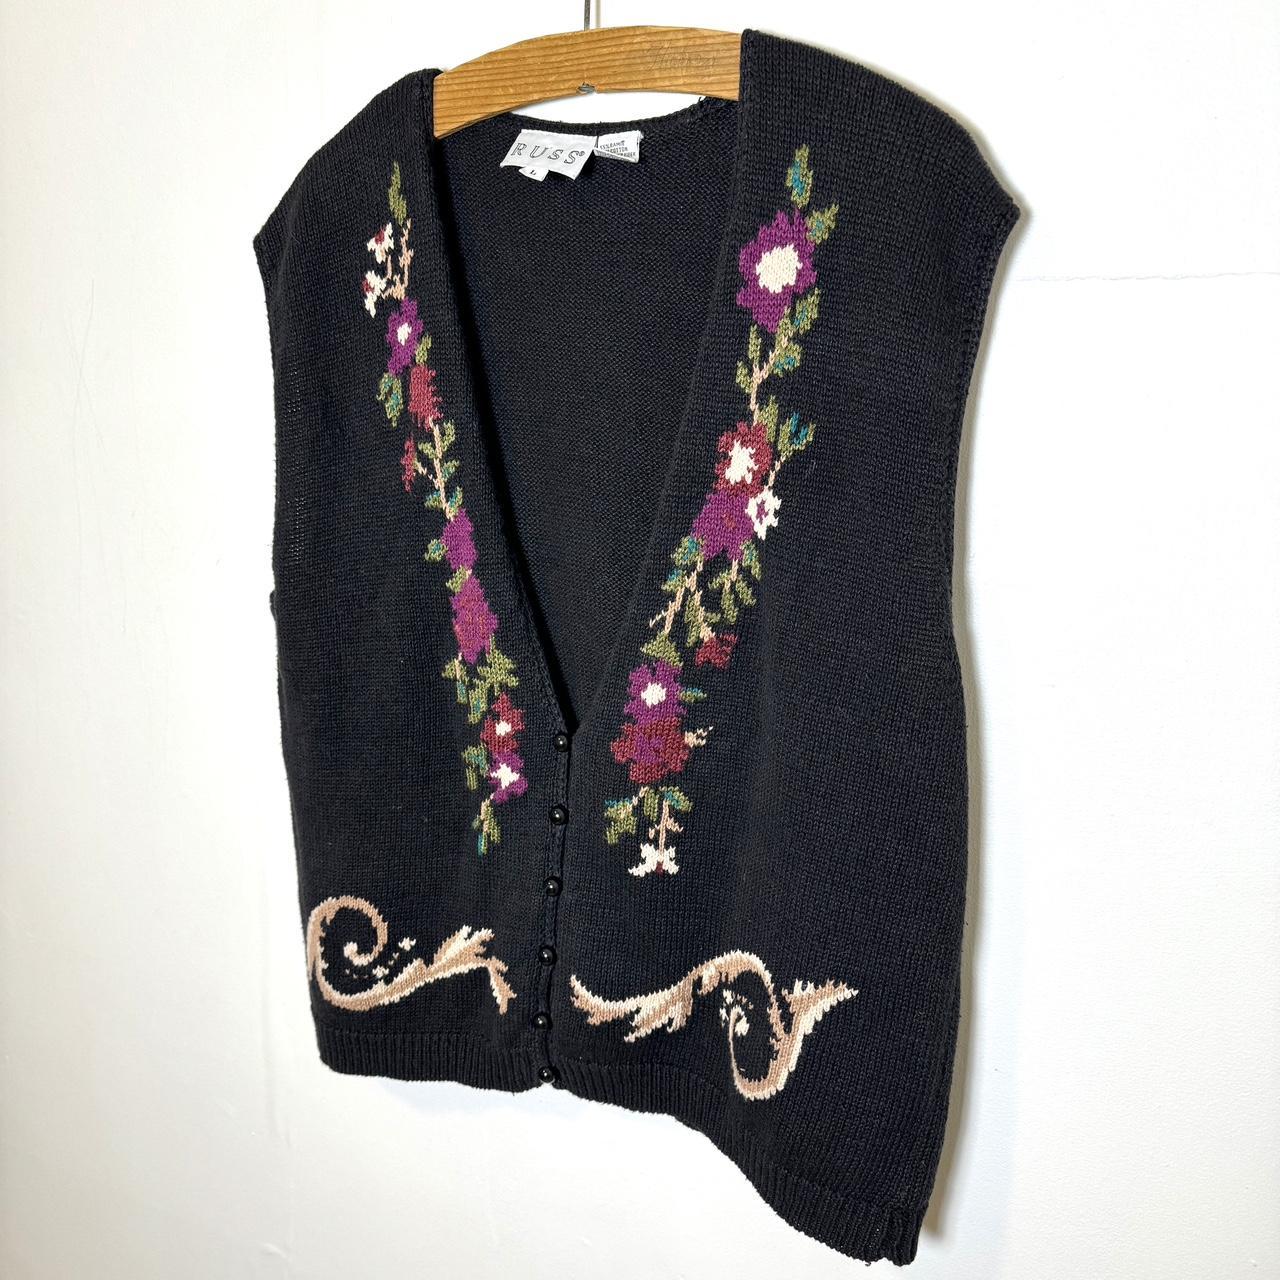 Vintage floral knit button up sweater vest Women’s... - Depop